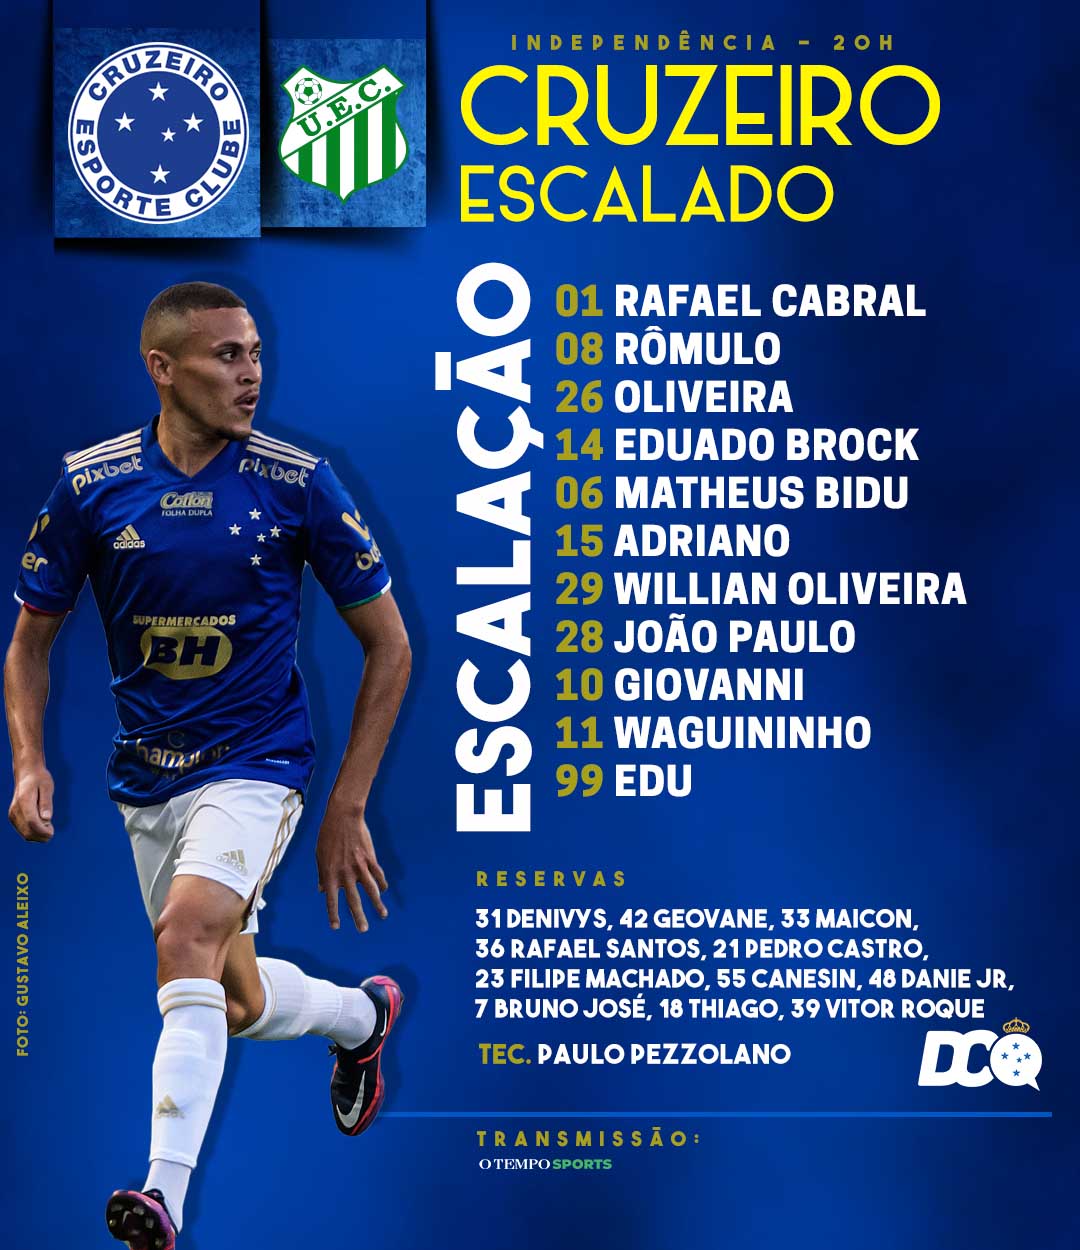 Cruzeiro escalado